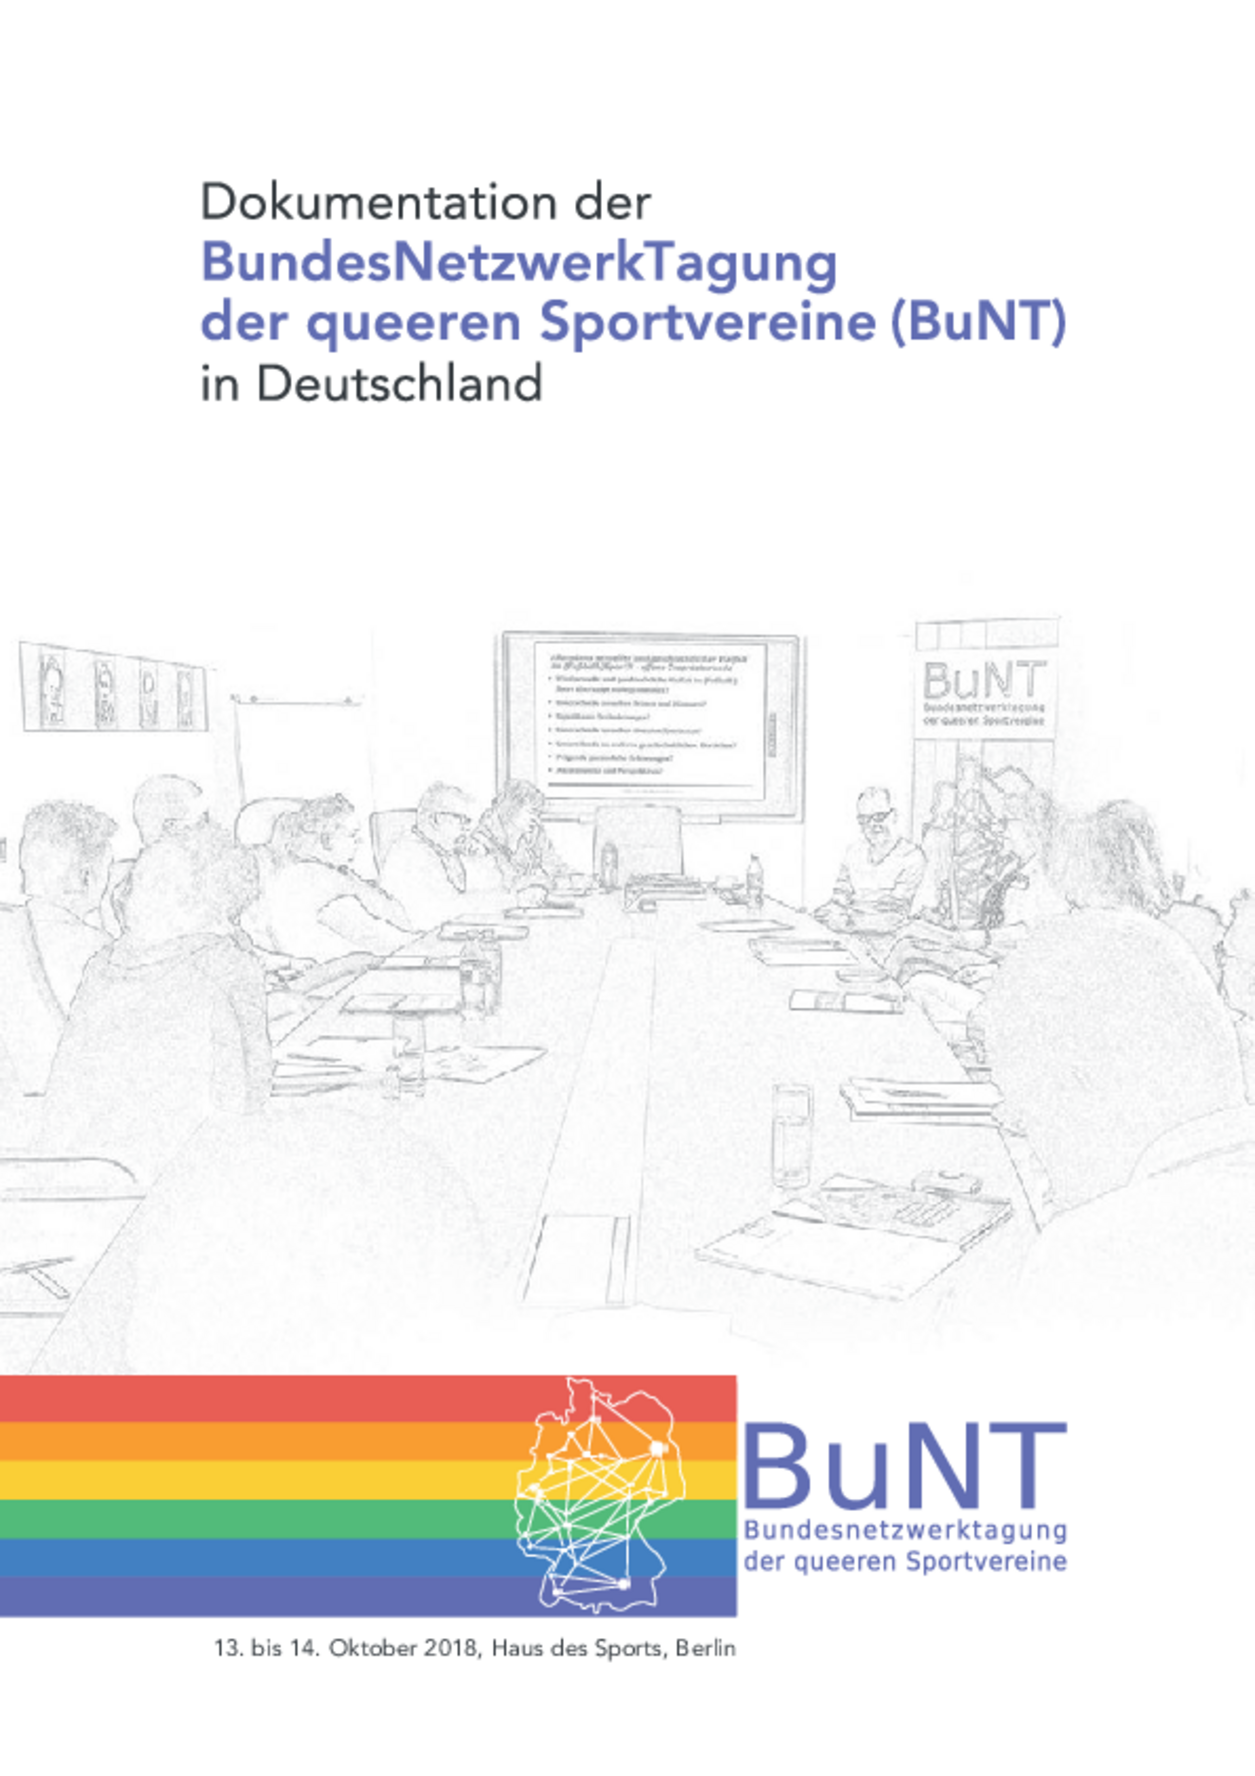 Titelseite der Dokumentation der BundesNetzwerkTagung des queeren Sports 2018